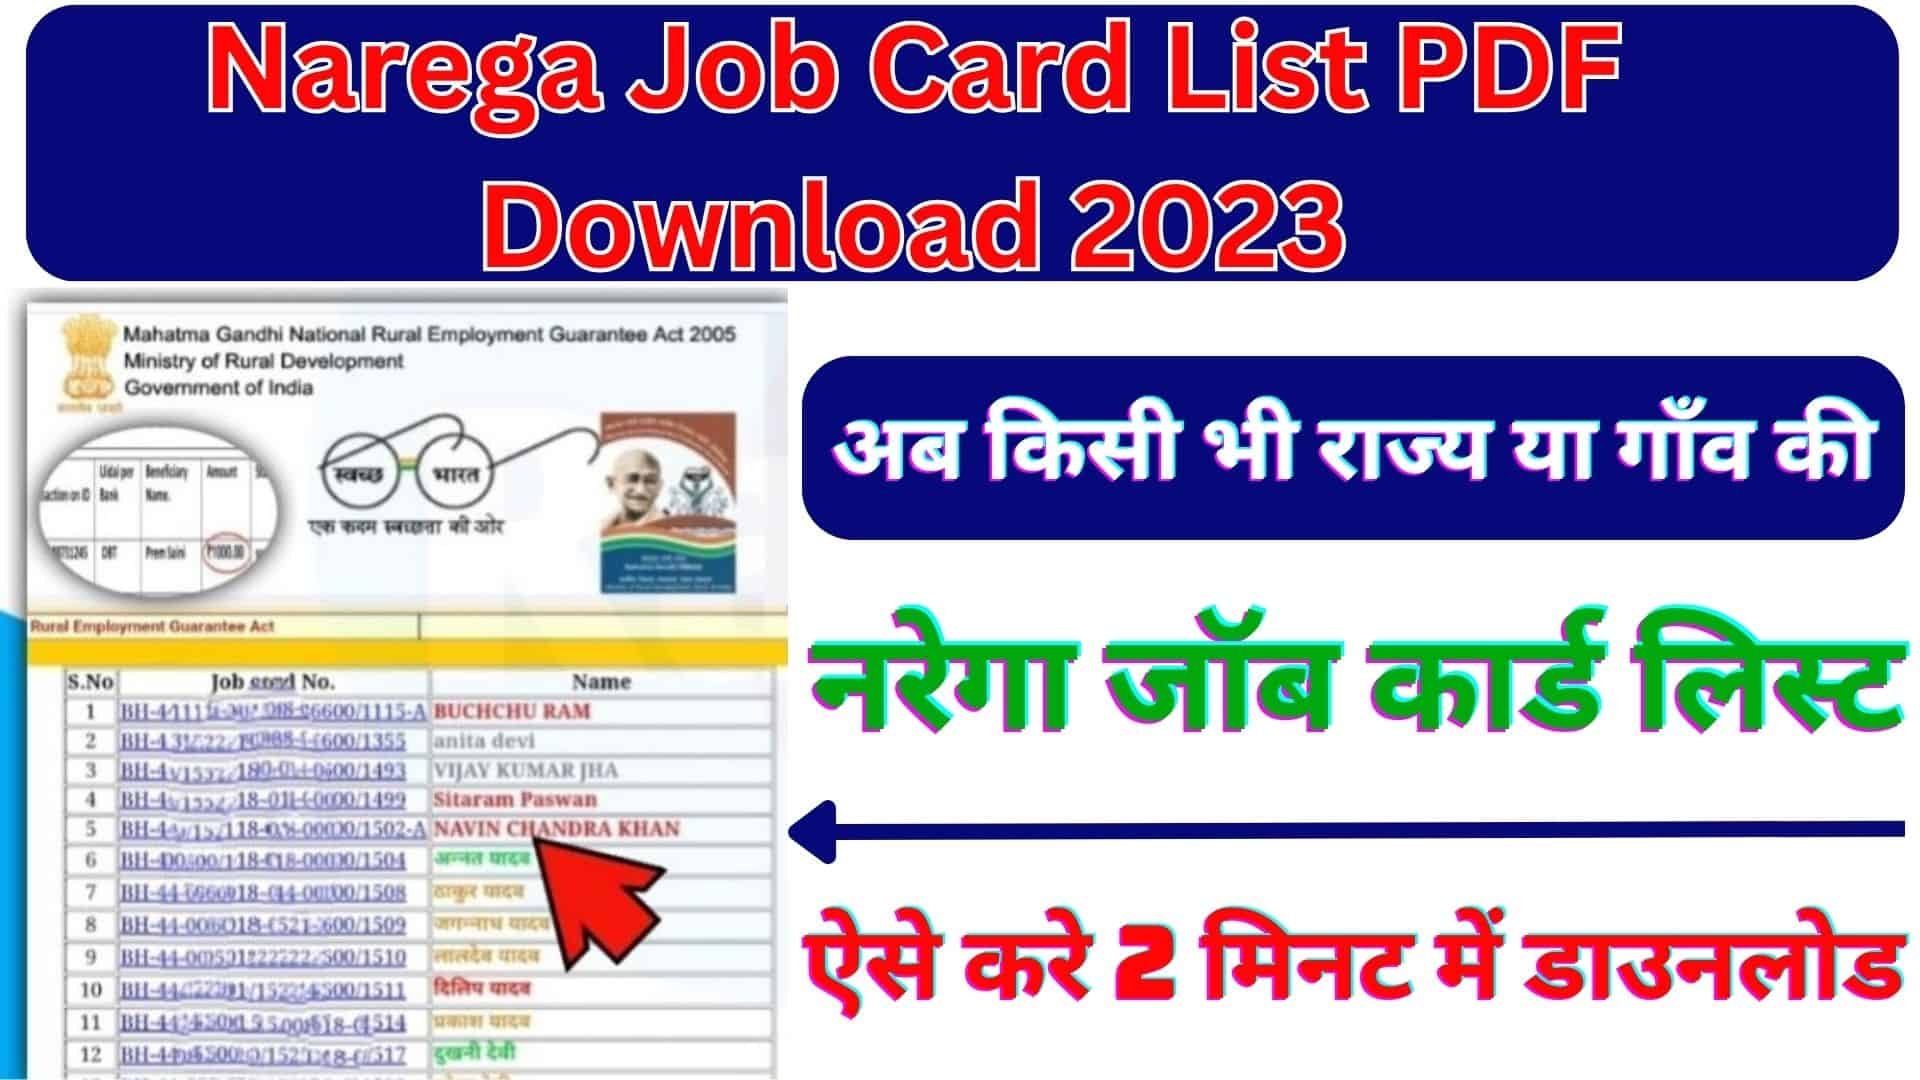 Narega Job Card List PDF Download 2023 : अब किसी भी राज्य या गाँव की नरेगा जॉब कार्ड लिस्ट ऐसे करे 2 मिनट में डाउनलोड